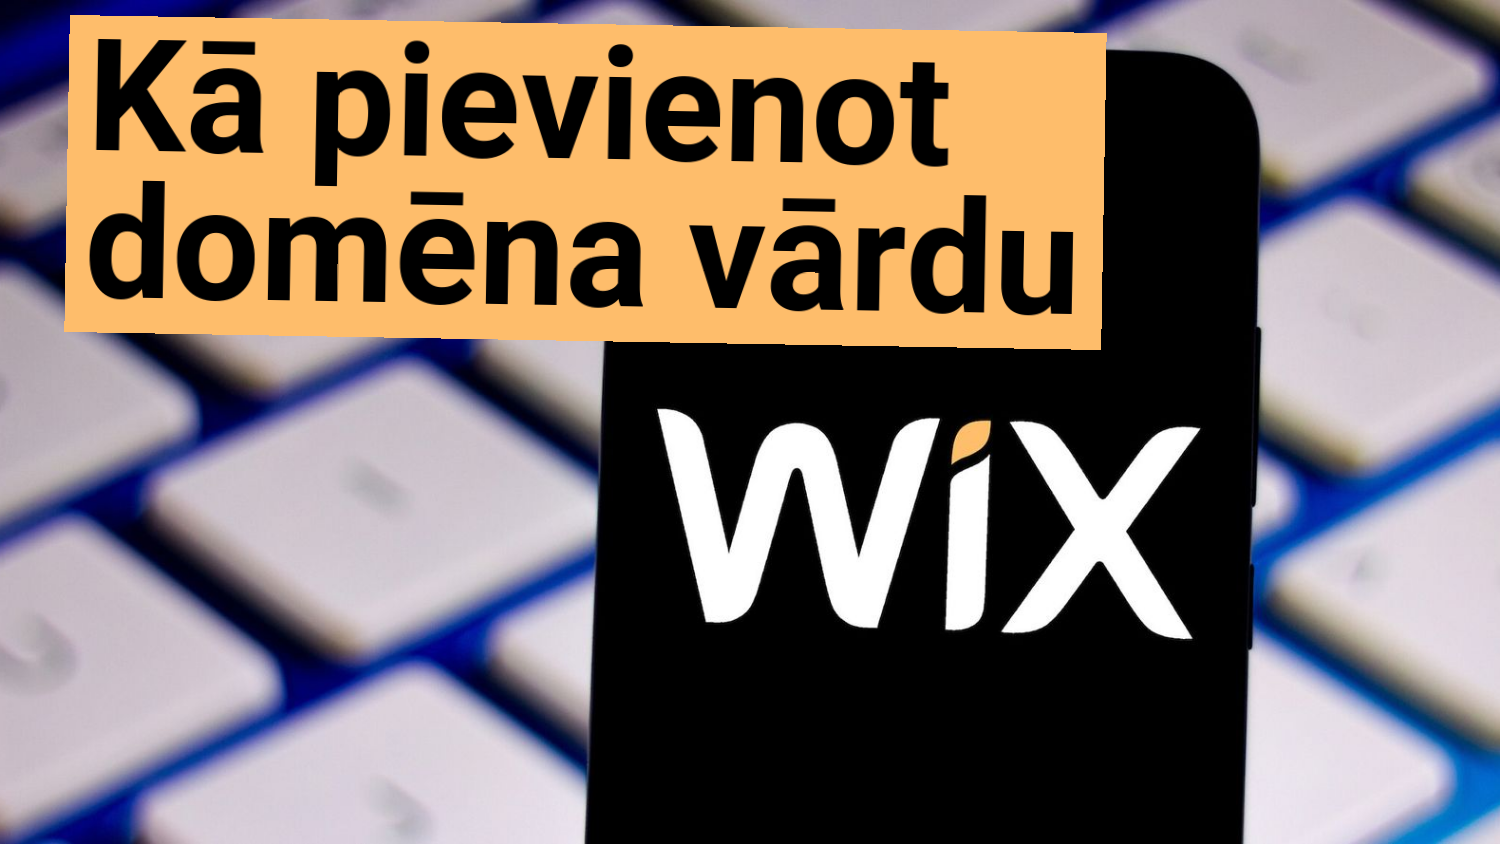 Kā pievienot domēna vārdu WIX?